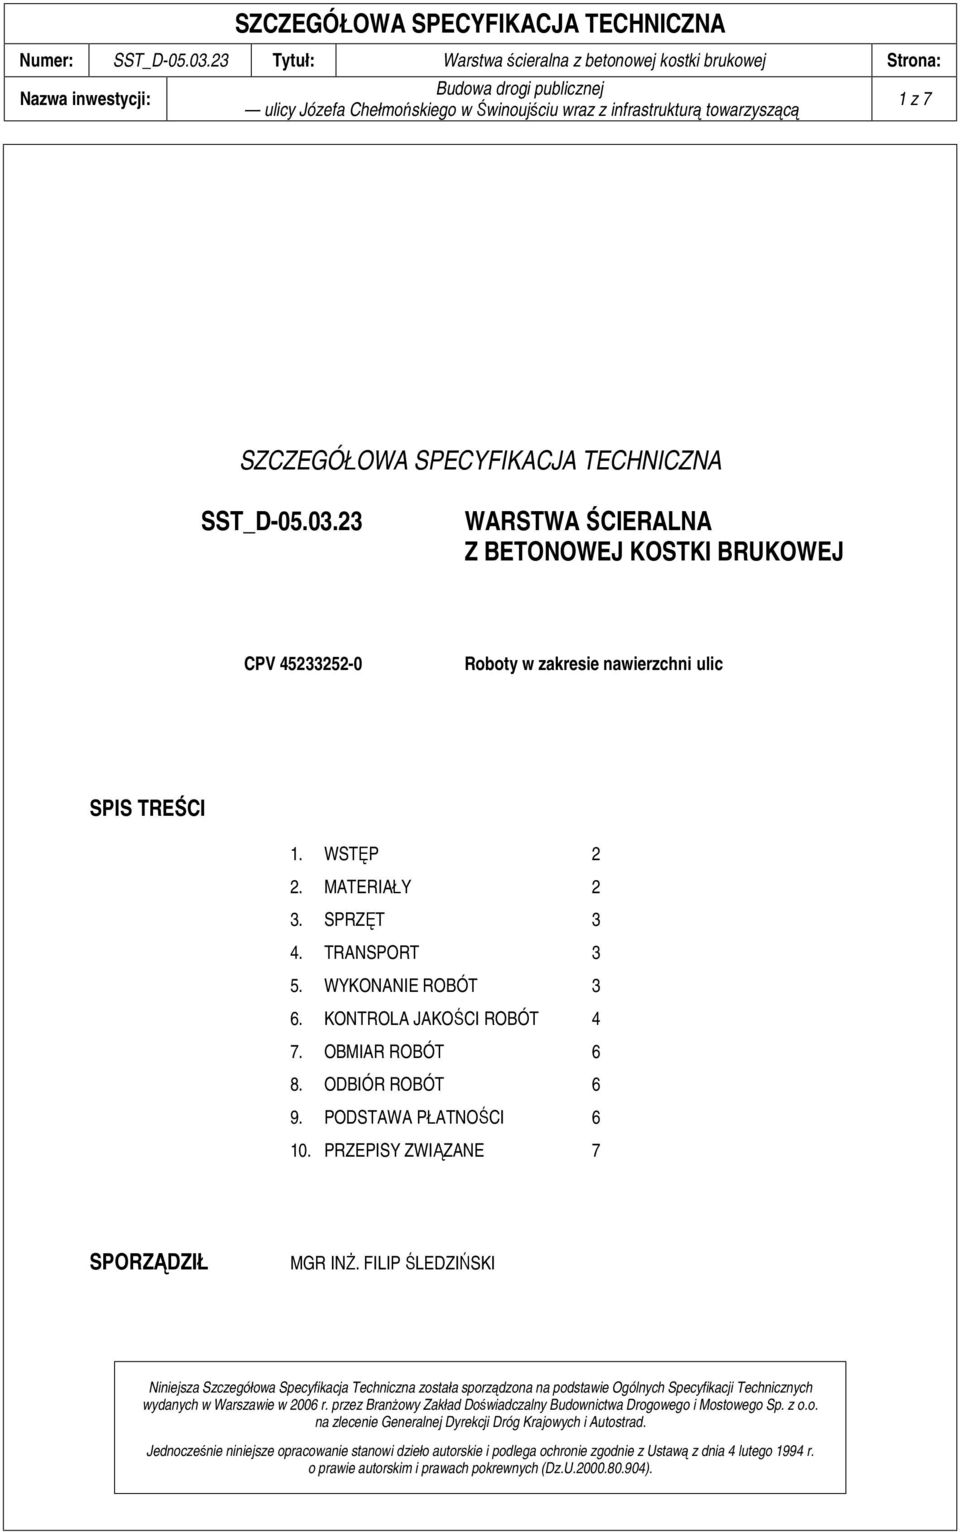 FILIP ŚLEDZIŃSKI Niniejsza Szczegółowa Specyfikacja Techniczna została sporządzona na podstawie Ogólnych Specyfikacji Technicznych wydanych w Warszawie w 2006 r.